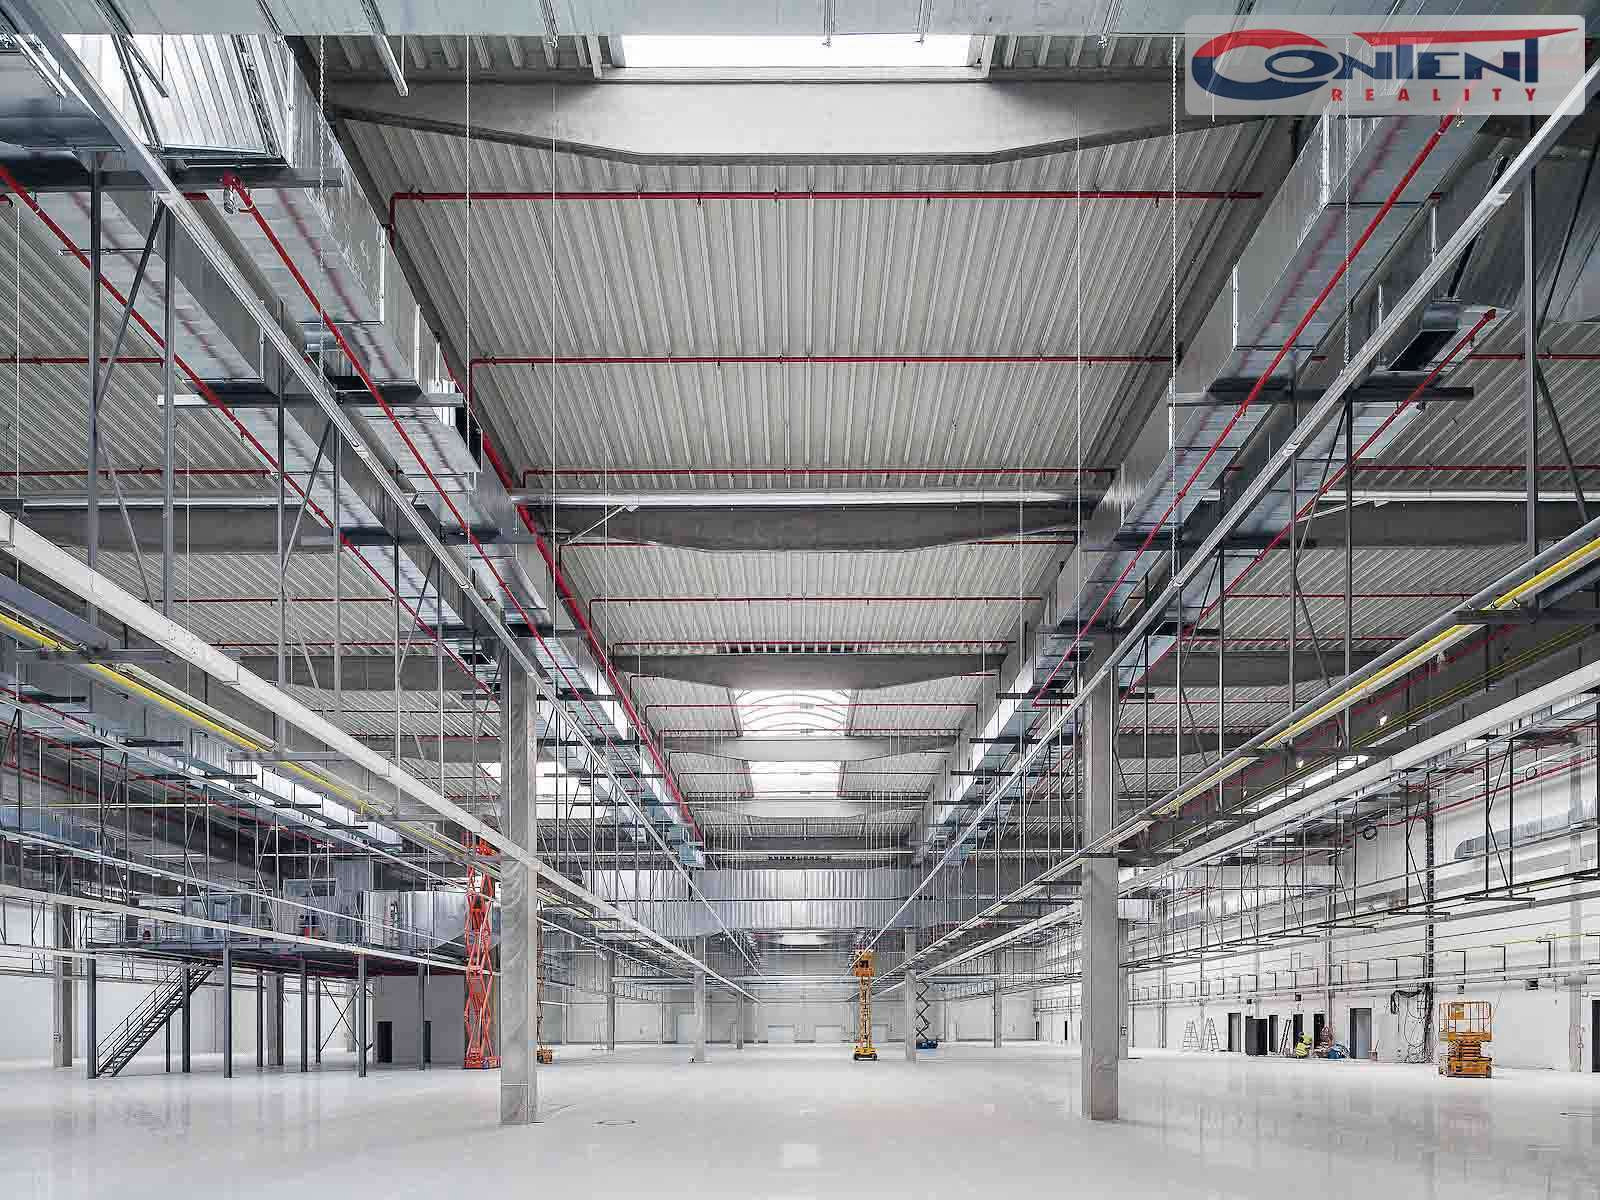 Pronájem skladu, výrobních prostor 7.461 m², Ostrava - Poruba, D1